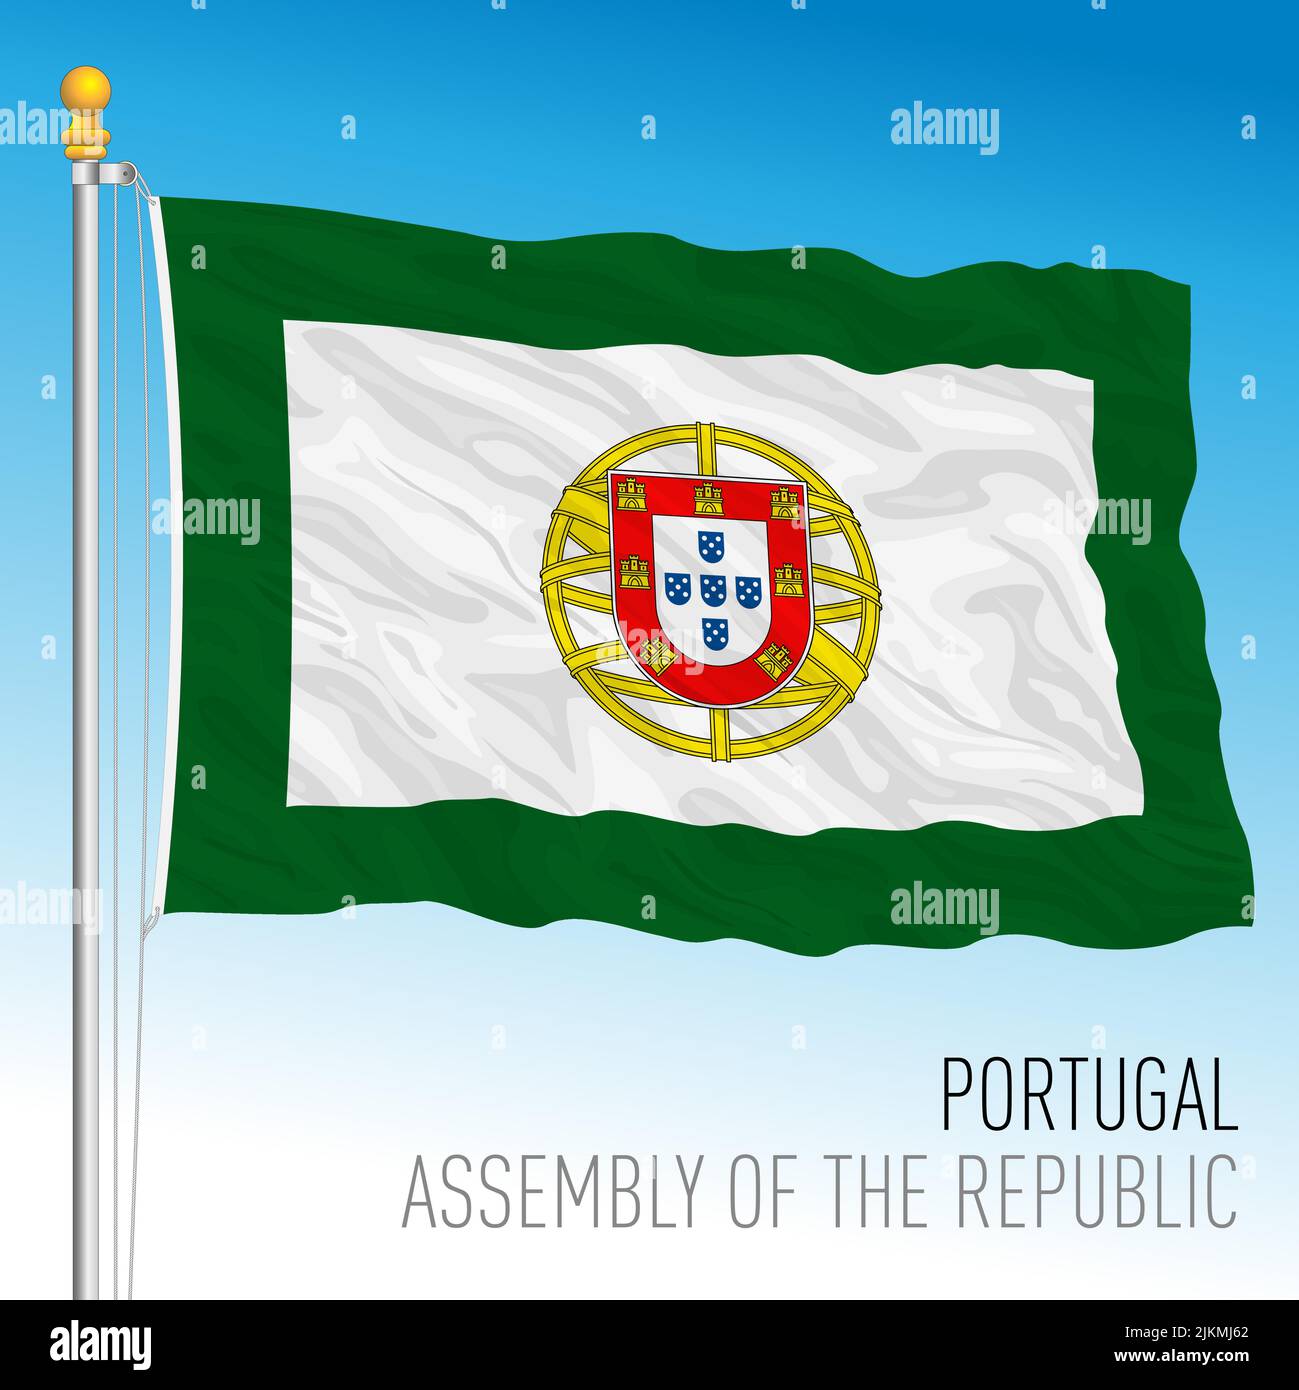 Portugal, Bandera de la Asamblea de la República, Unión Europea, ilustración de vectores Ilustración del Vector